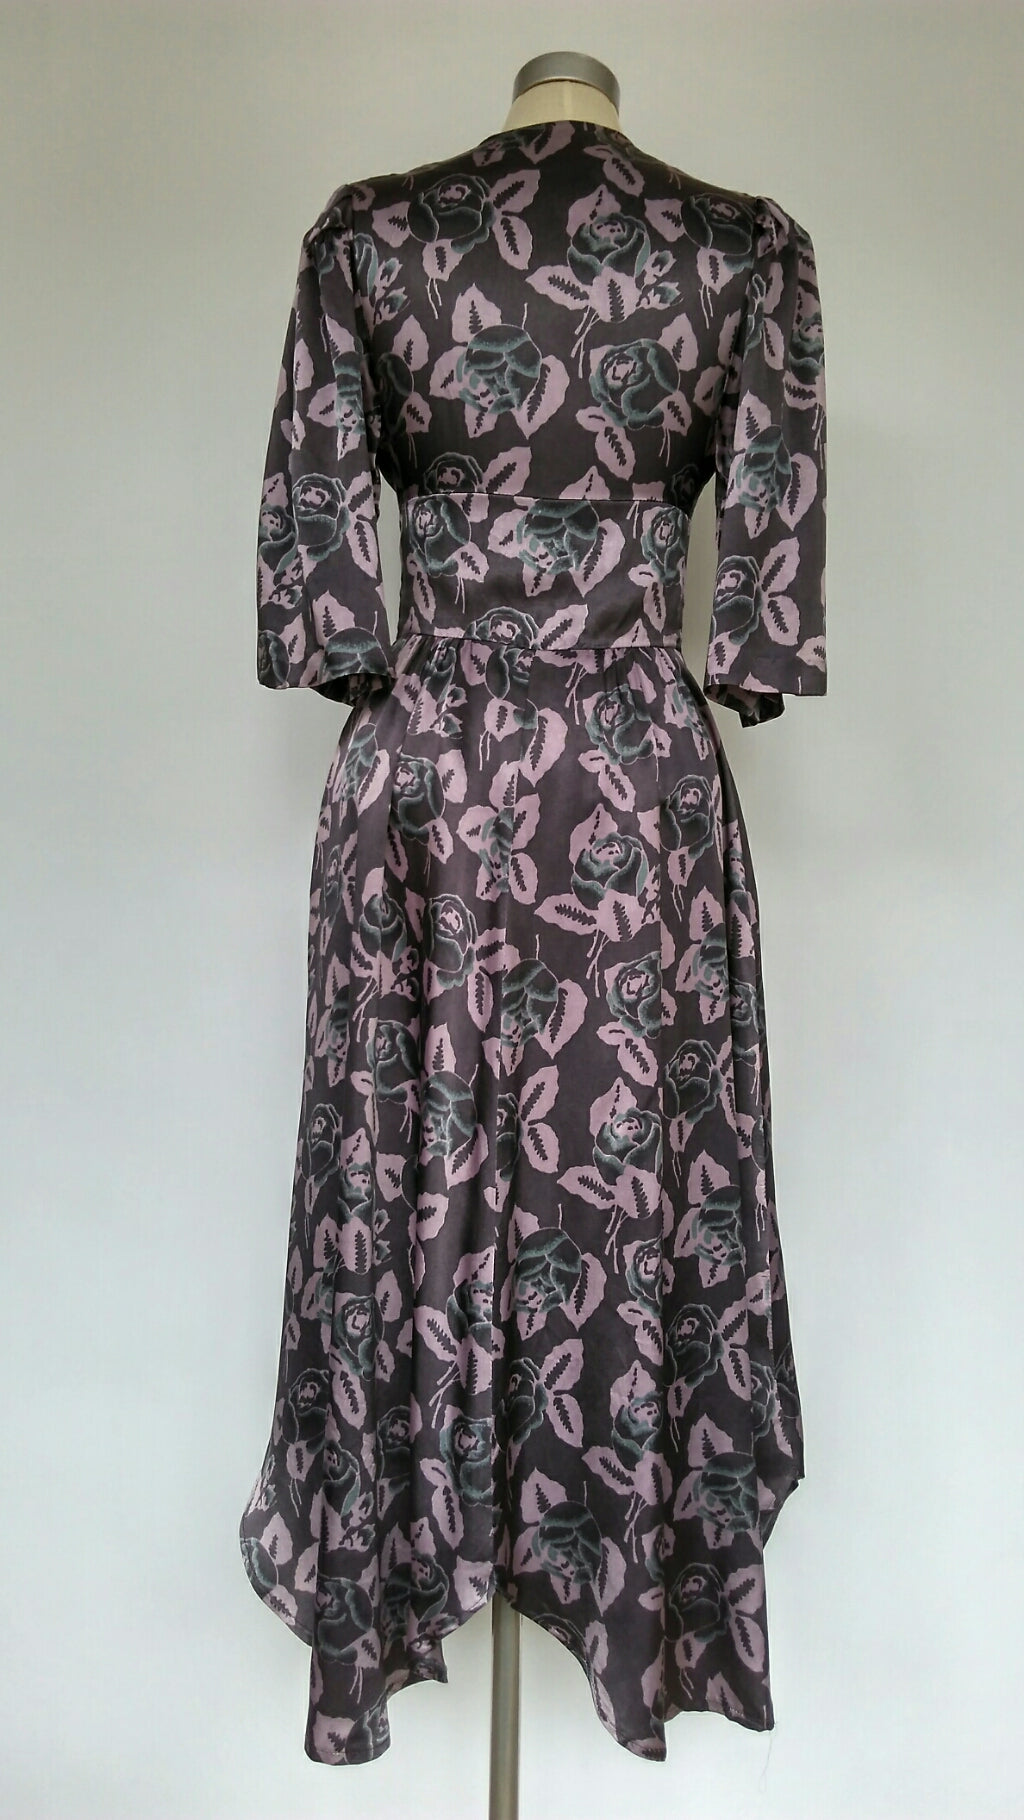 Floral 1970s dress